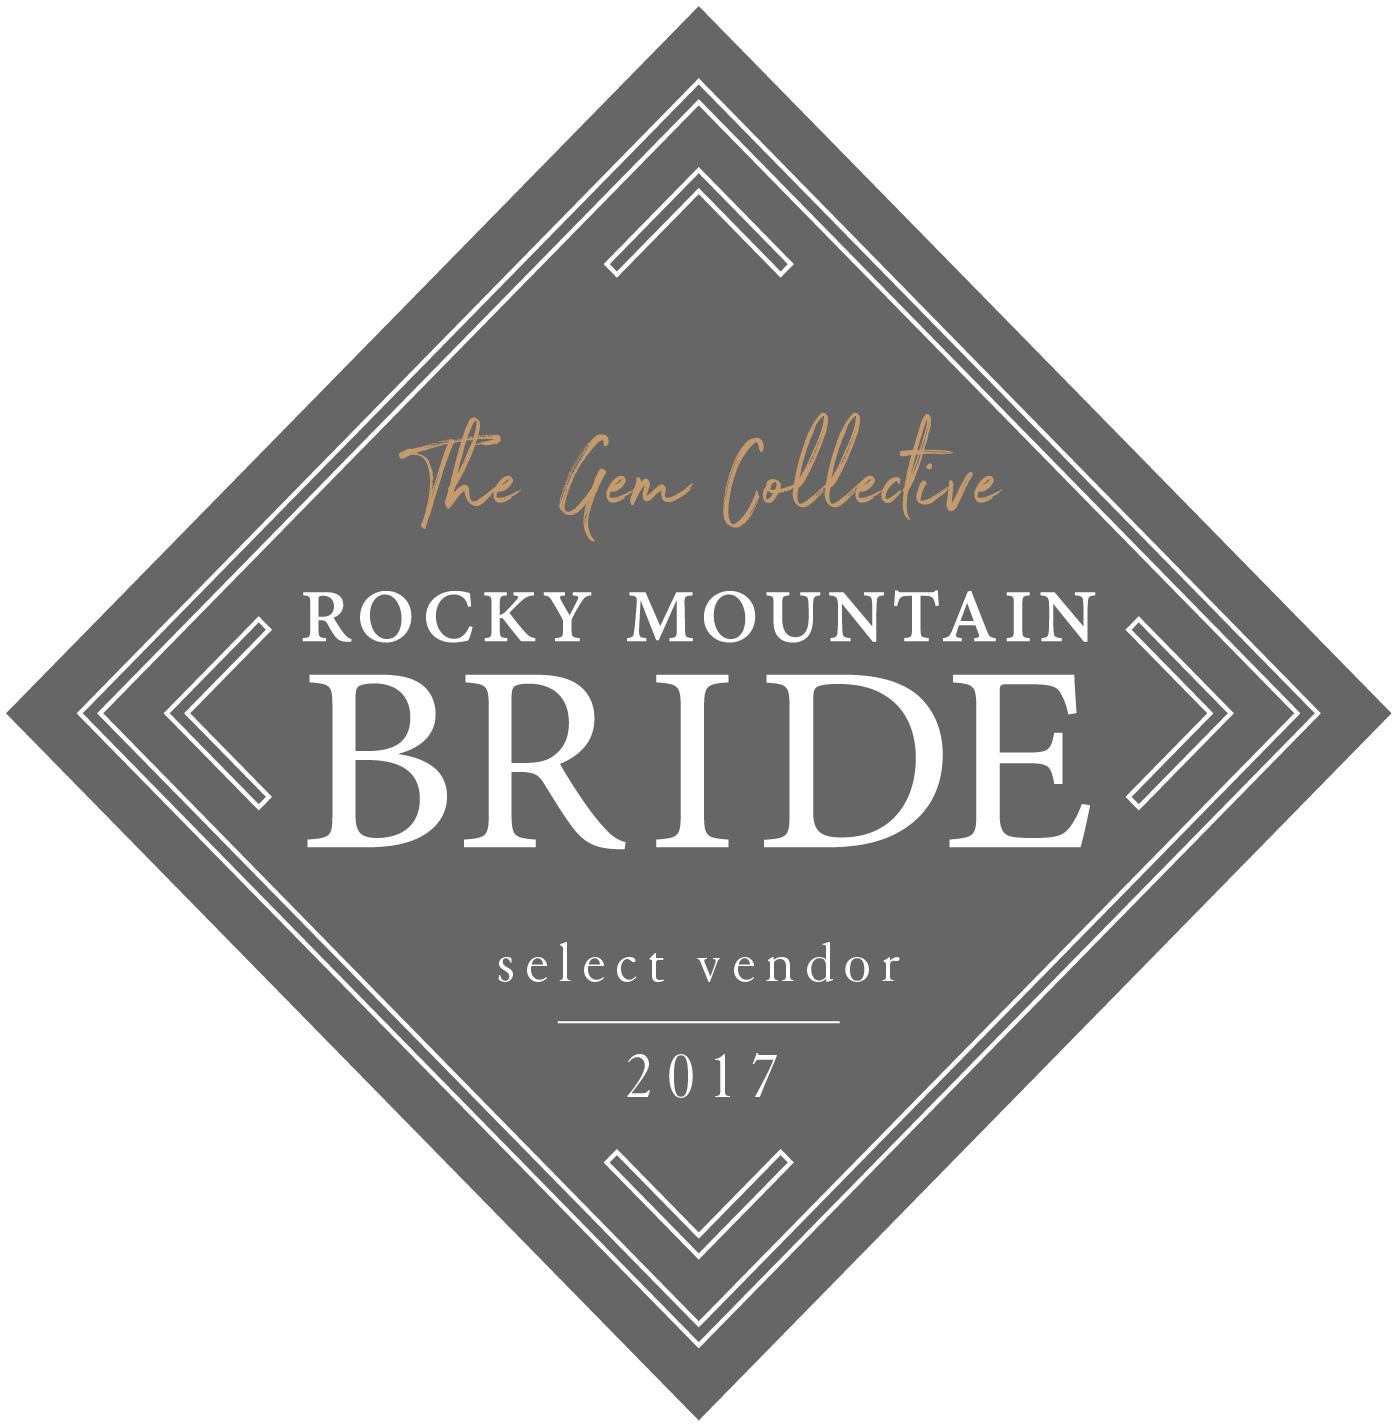 Rocky Mountain Bride: 2017 Select Vendor The Gem Collection